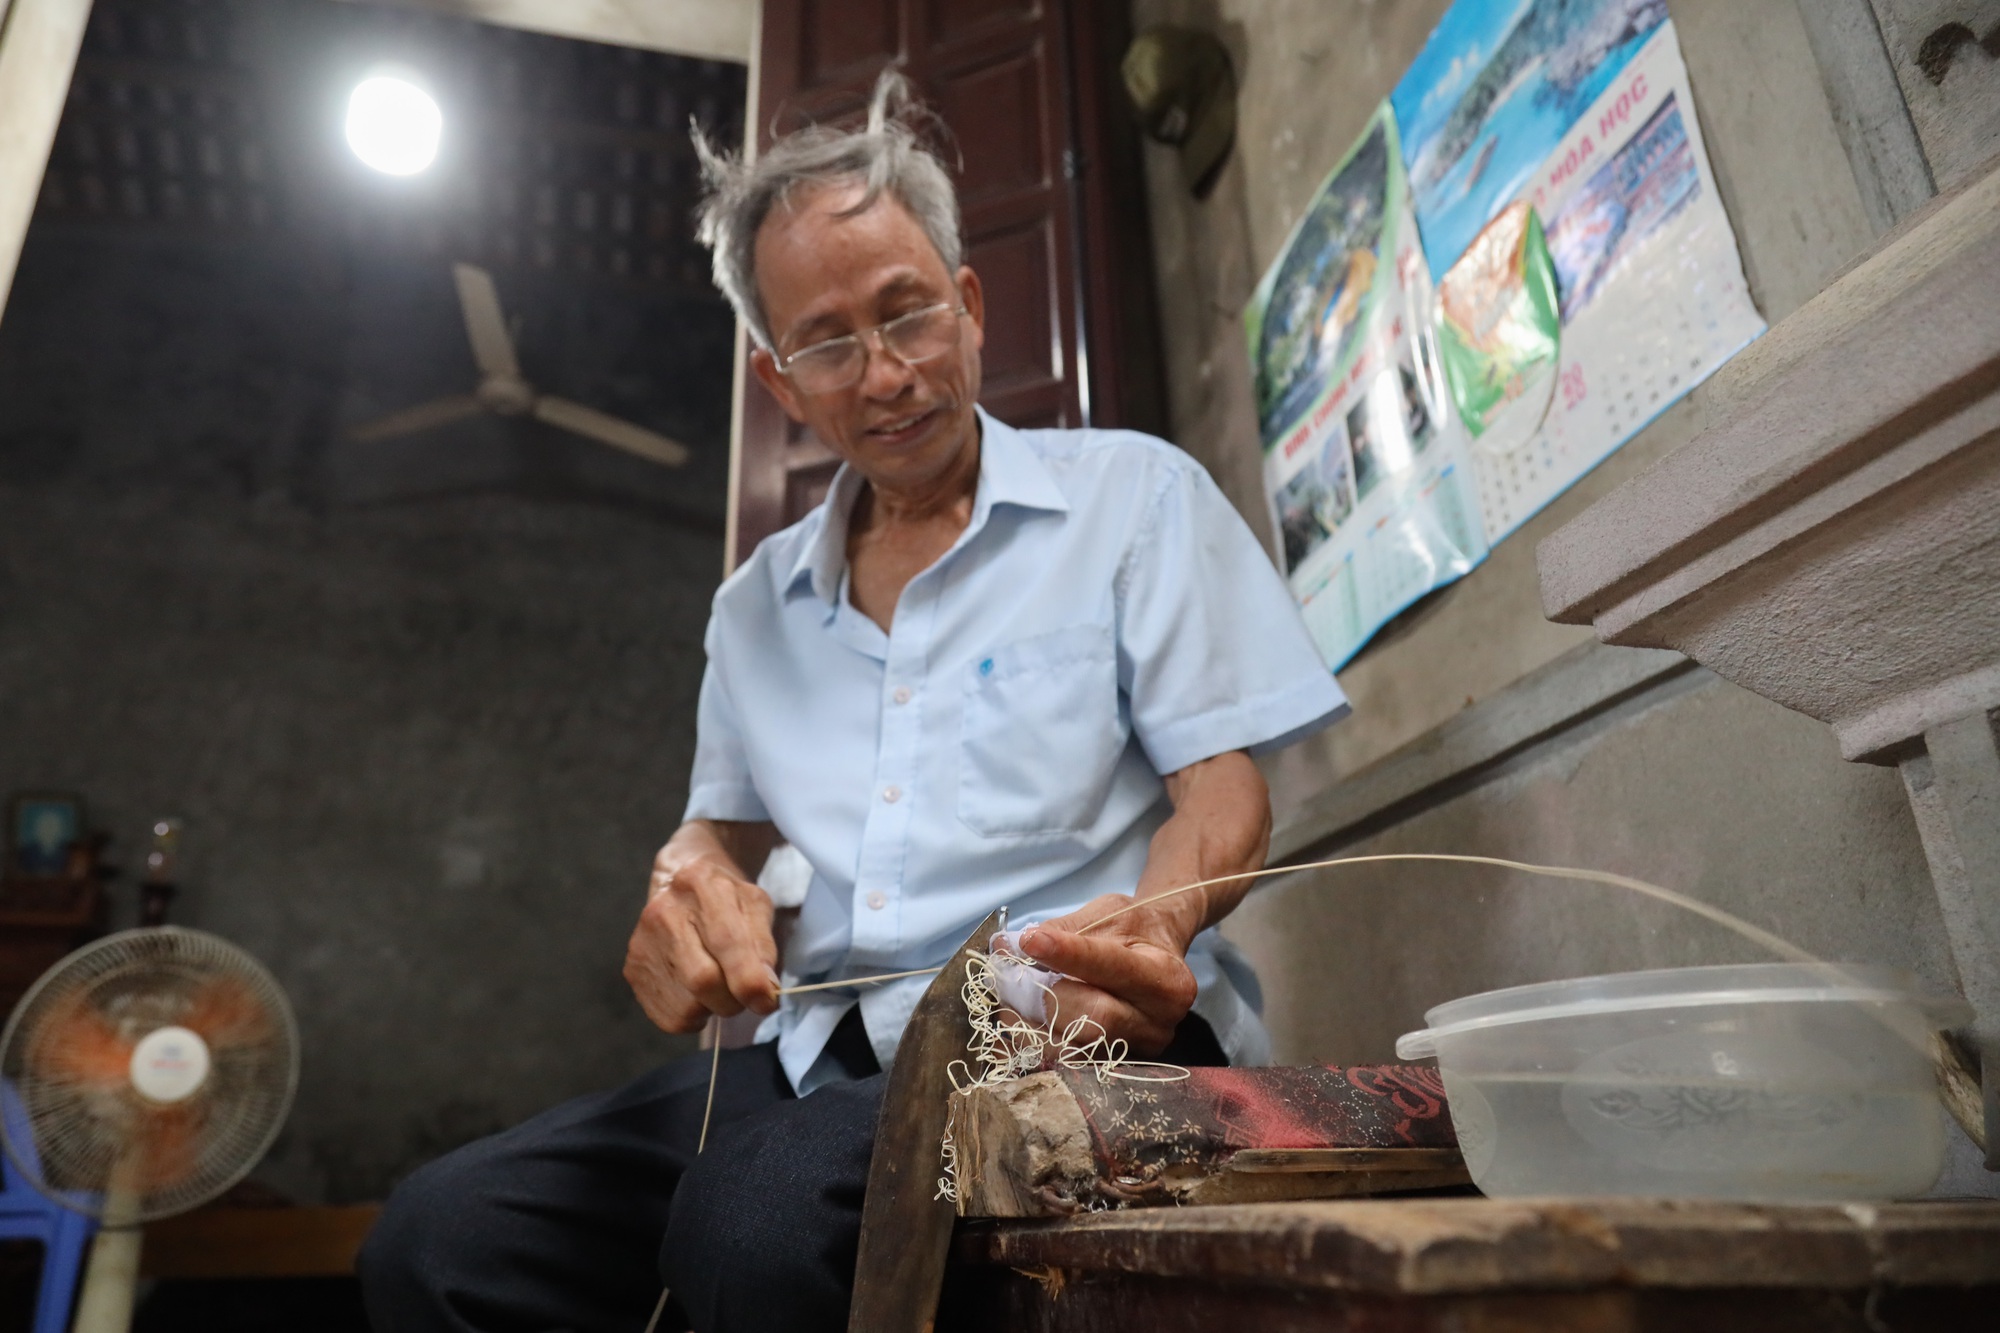 Chiếc lồng bàn đan bằng sợi mây đắt nhất Việt Nam: Có gì mà giá lên tới 30 triệu đồng?